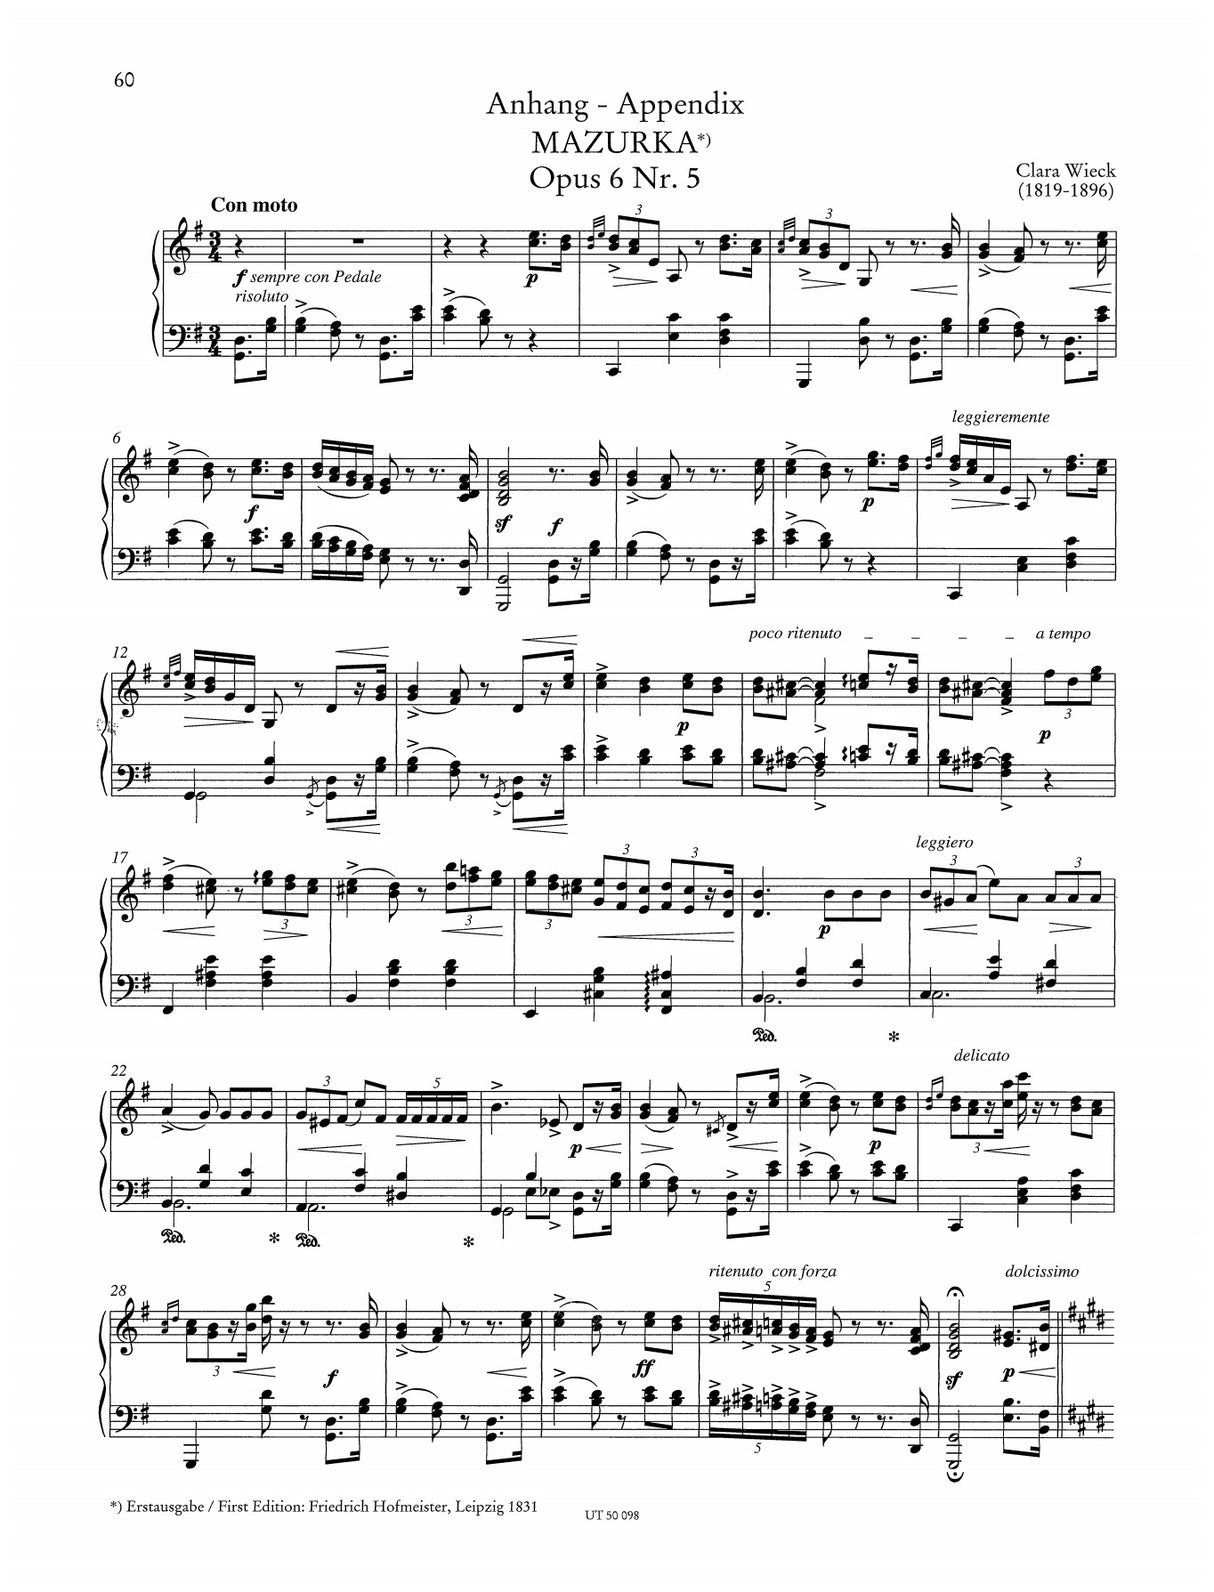 Schumann: Davidsbündlertänze, Op. 6